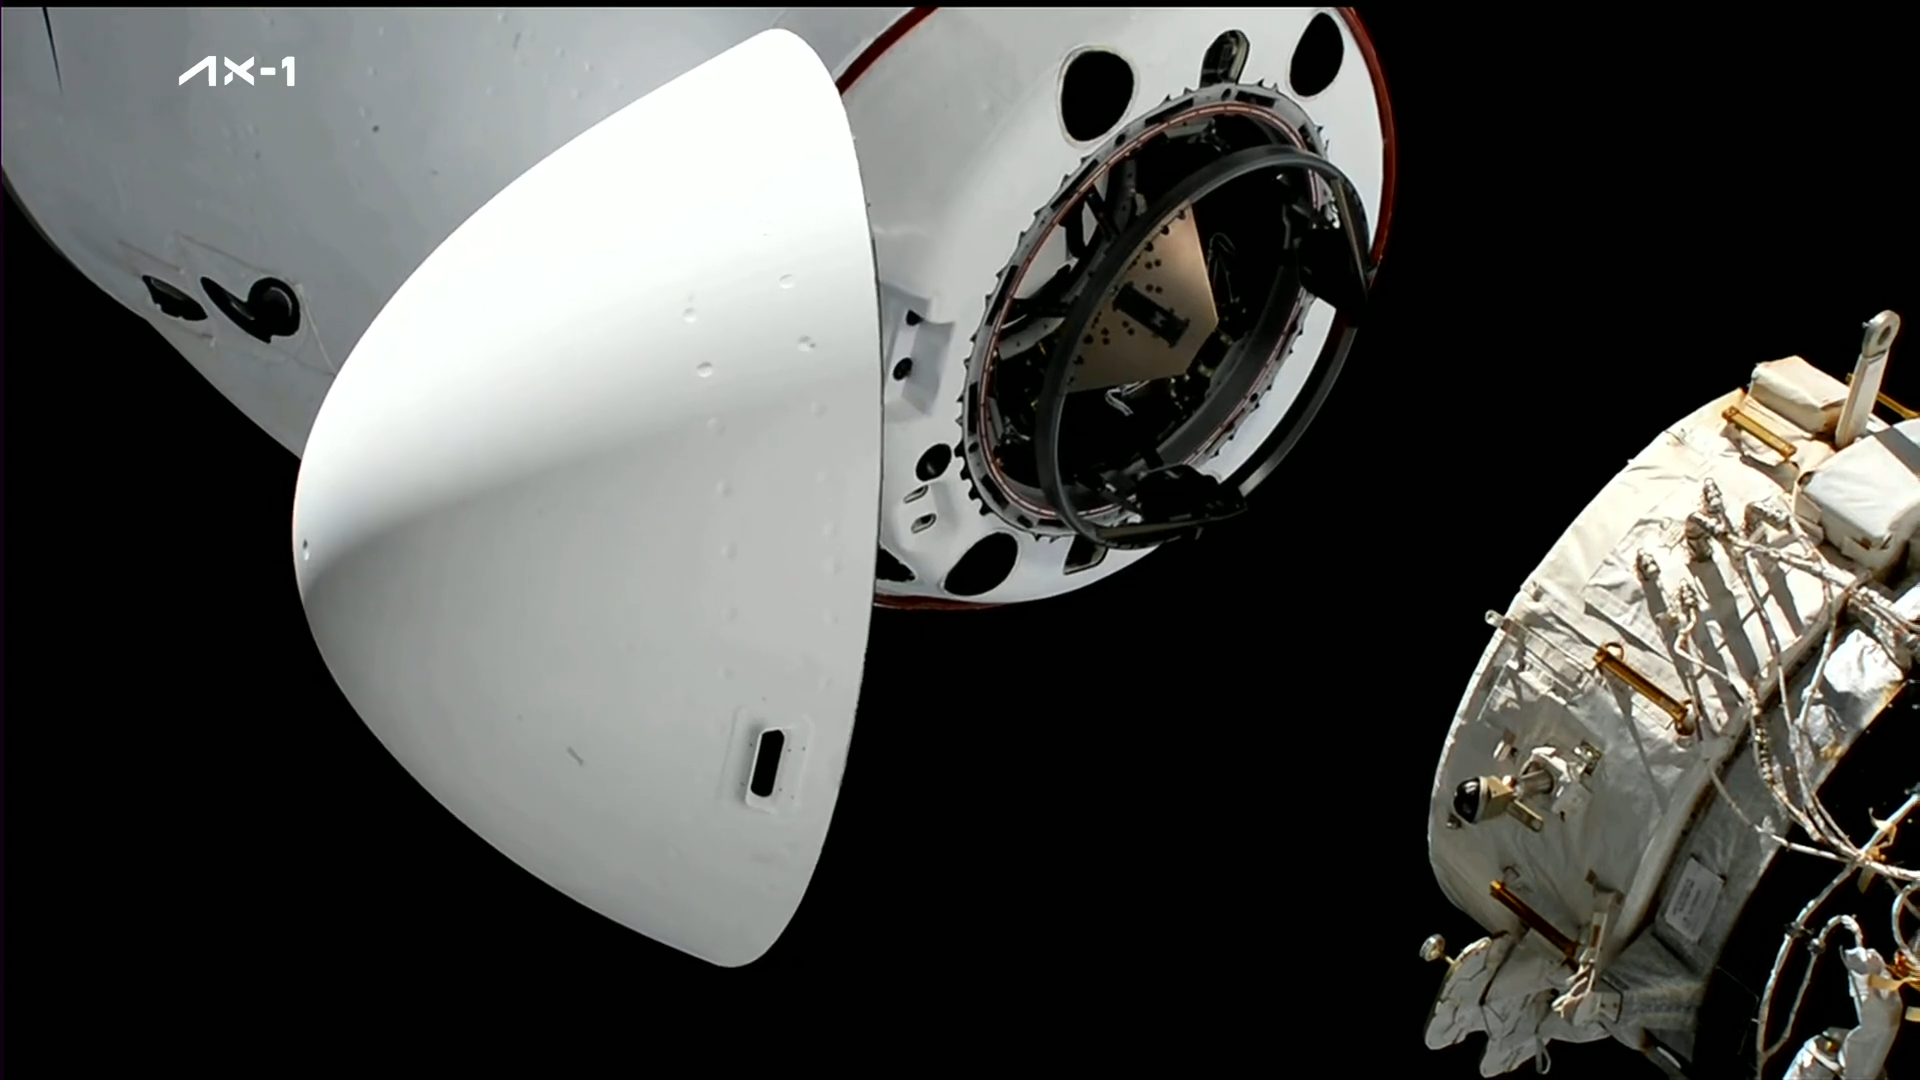 Statek Dragon 2 Endeavour tuż przed dokowaniem do ISS w ramach misji Ax-1 (Źródło: SpaceX)